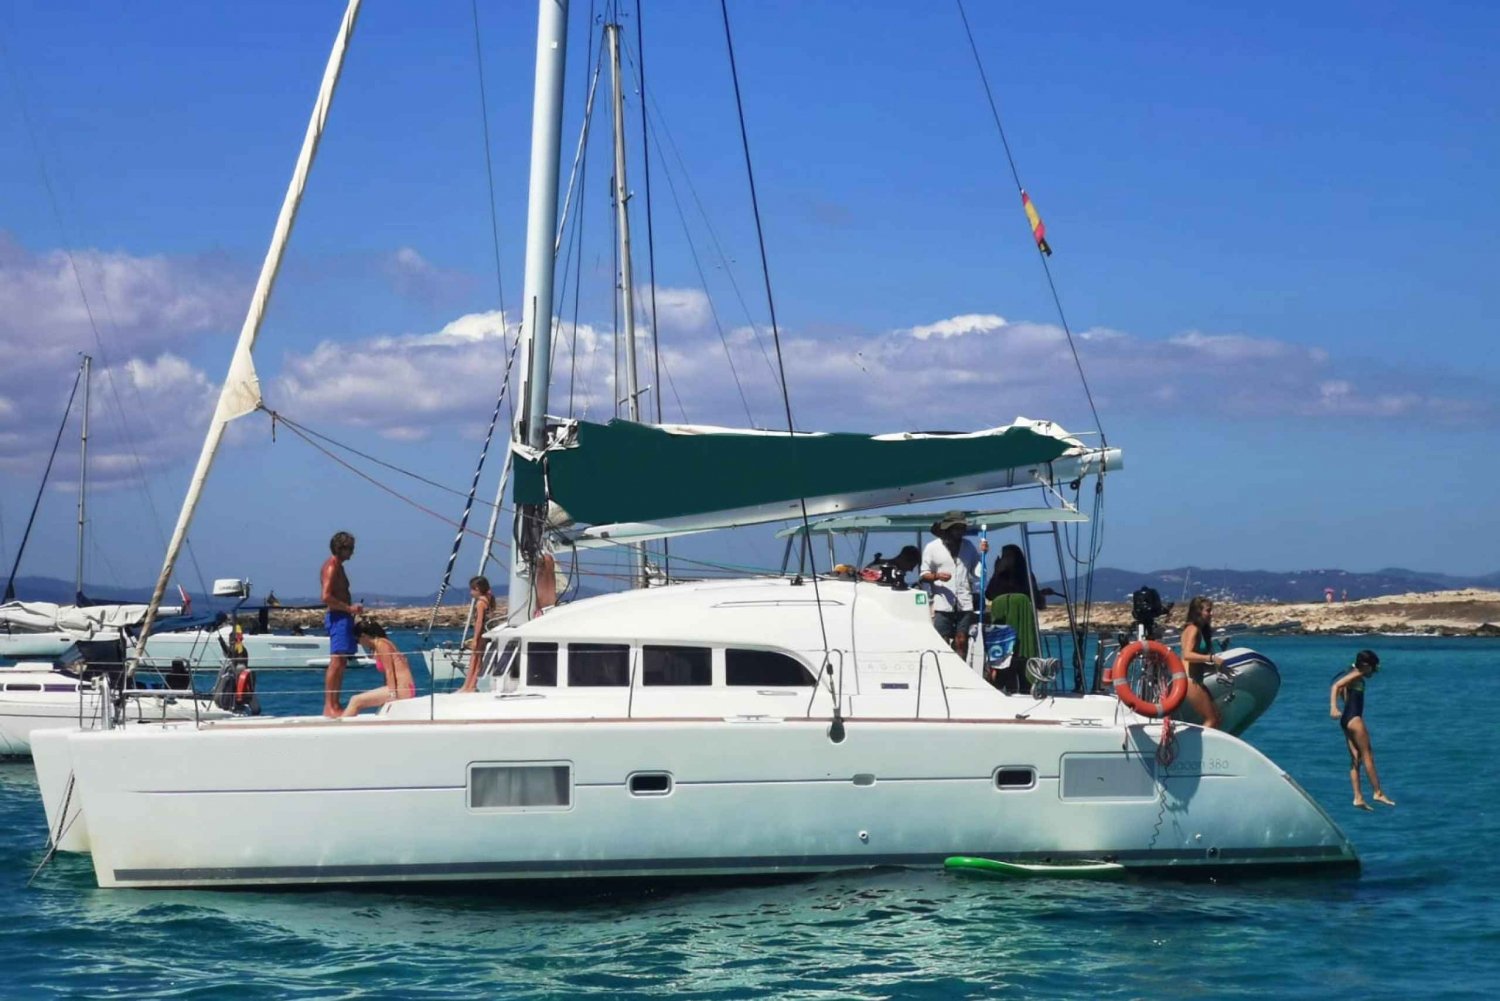 Ibiza : Excursion d'une journée en petit groupe à Formentera en catamaran